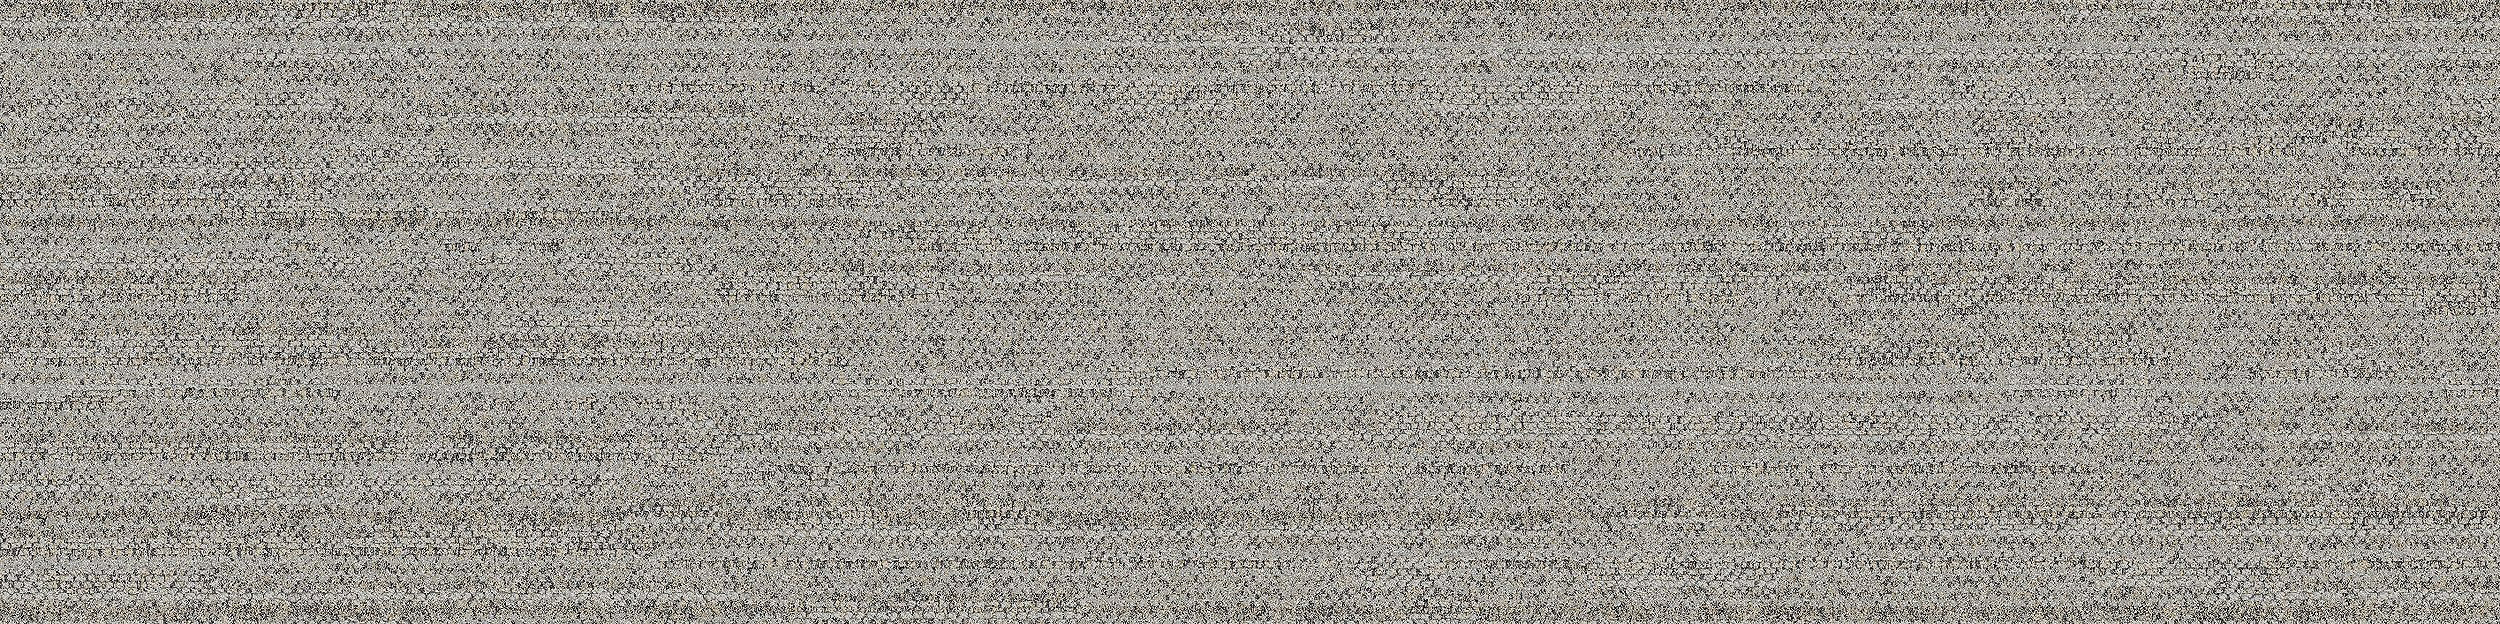 WW880 Carpet Tile In Linen Loom image number 8